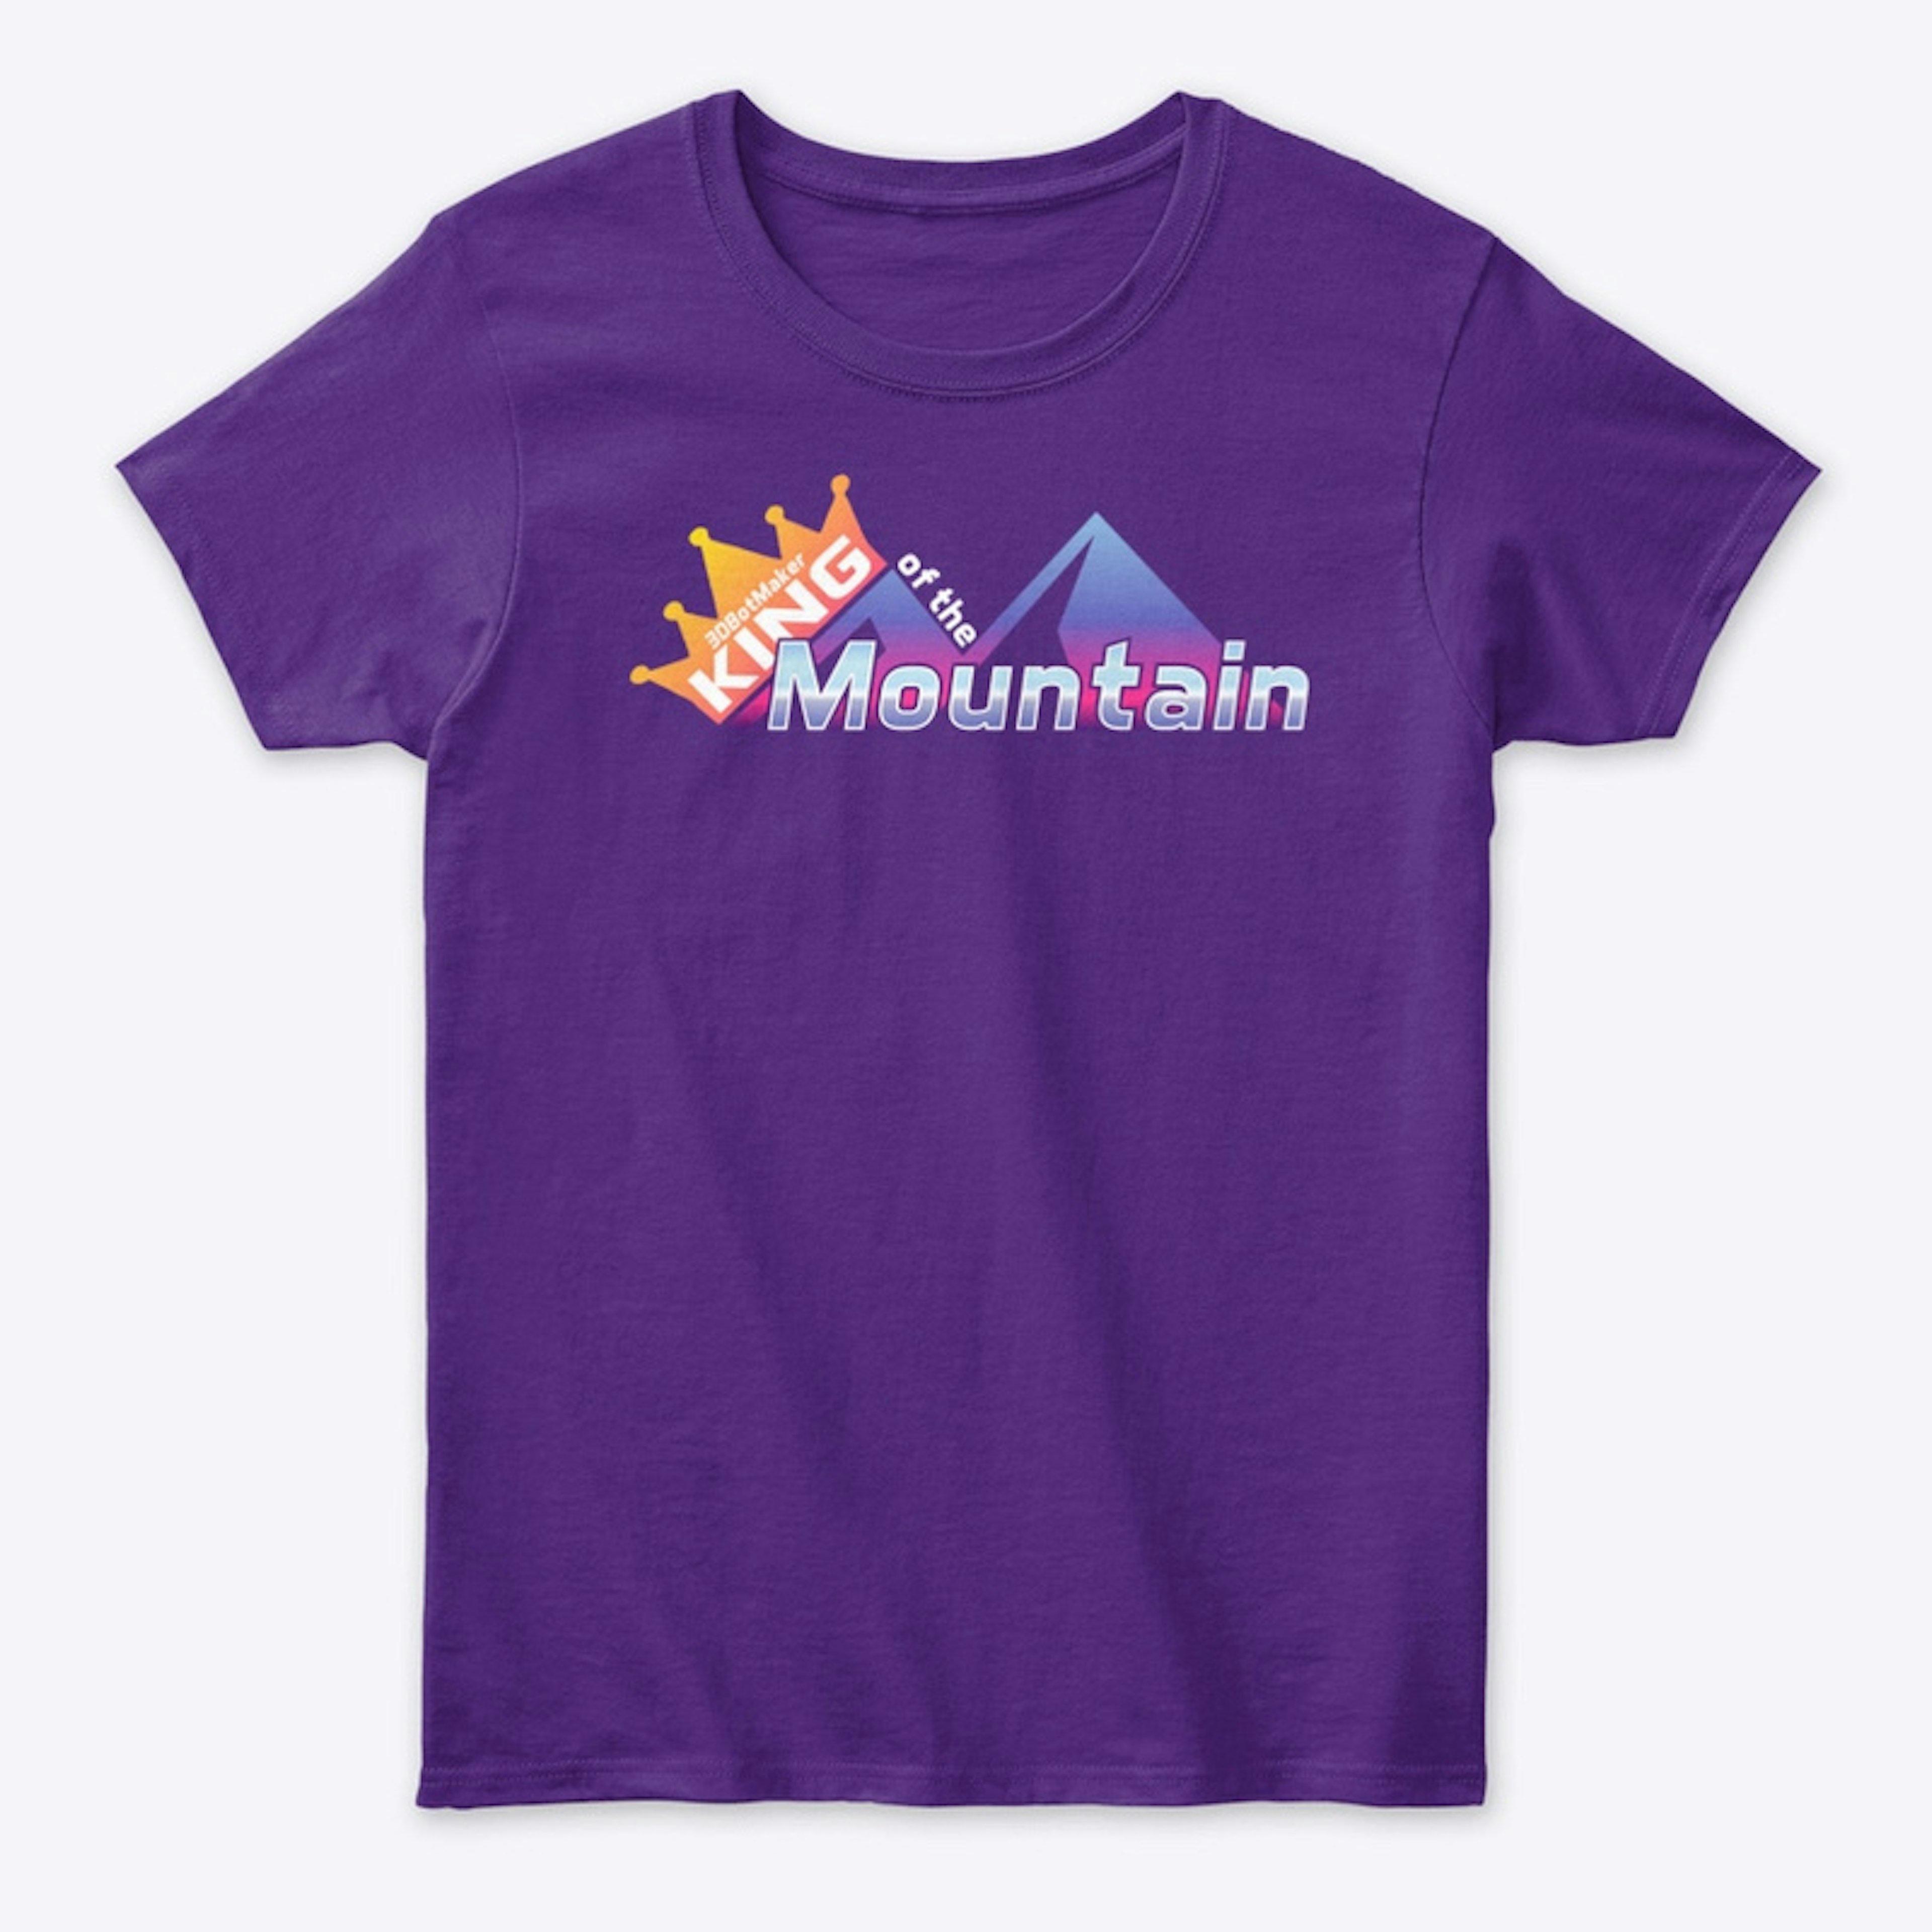 King of the Mountain Season 4